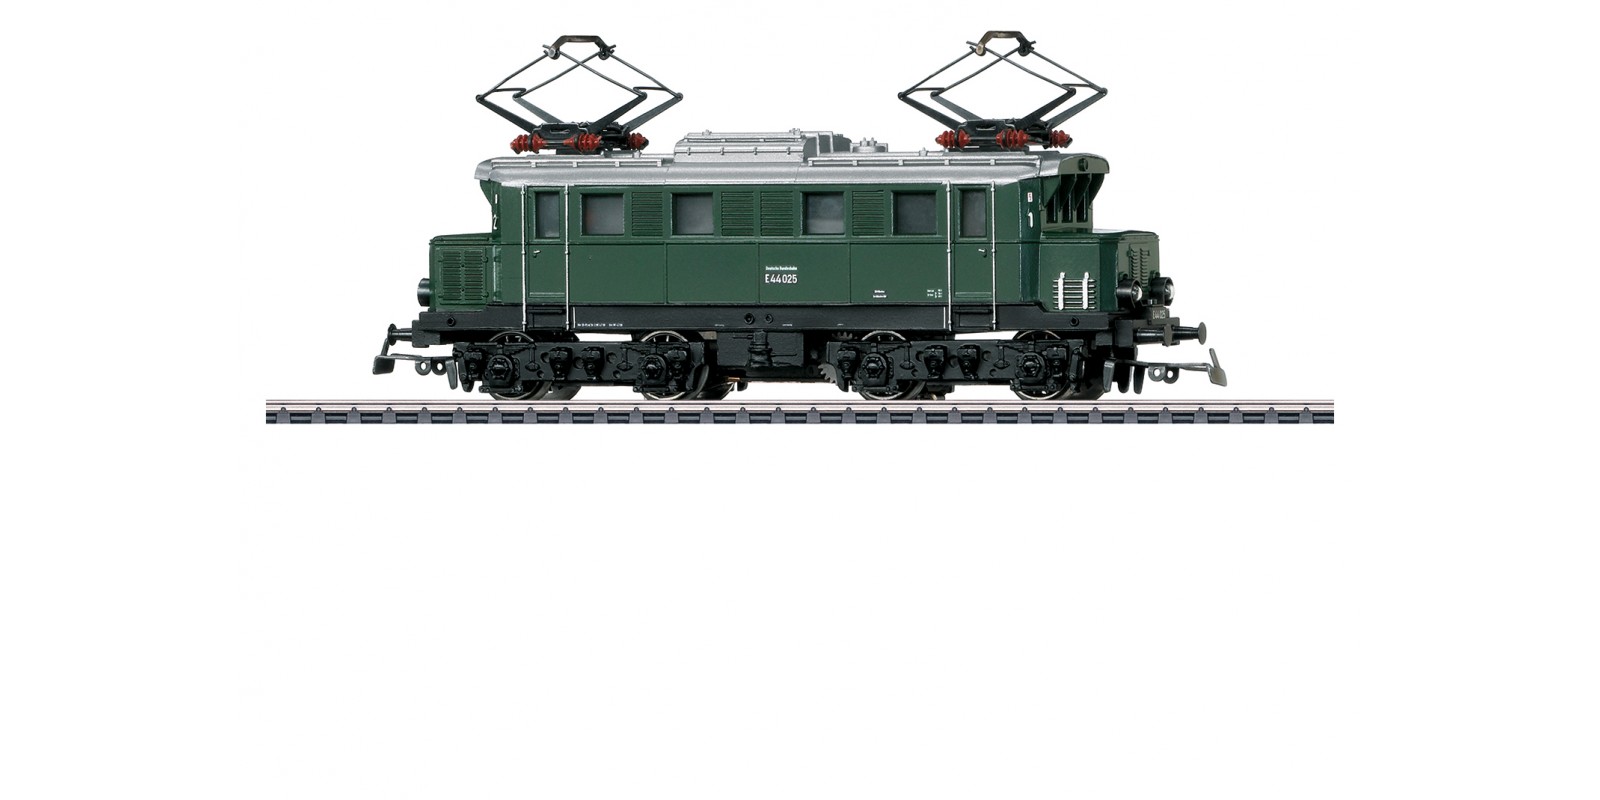 30110 Class E 44 Electric Locomotive